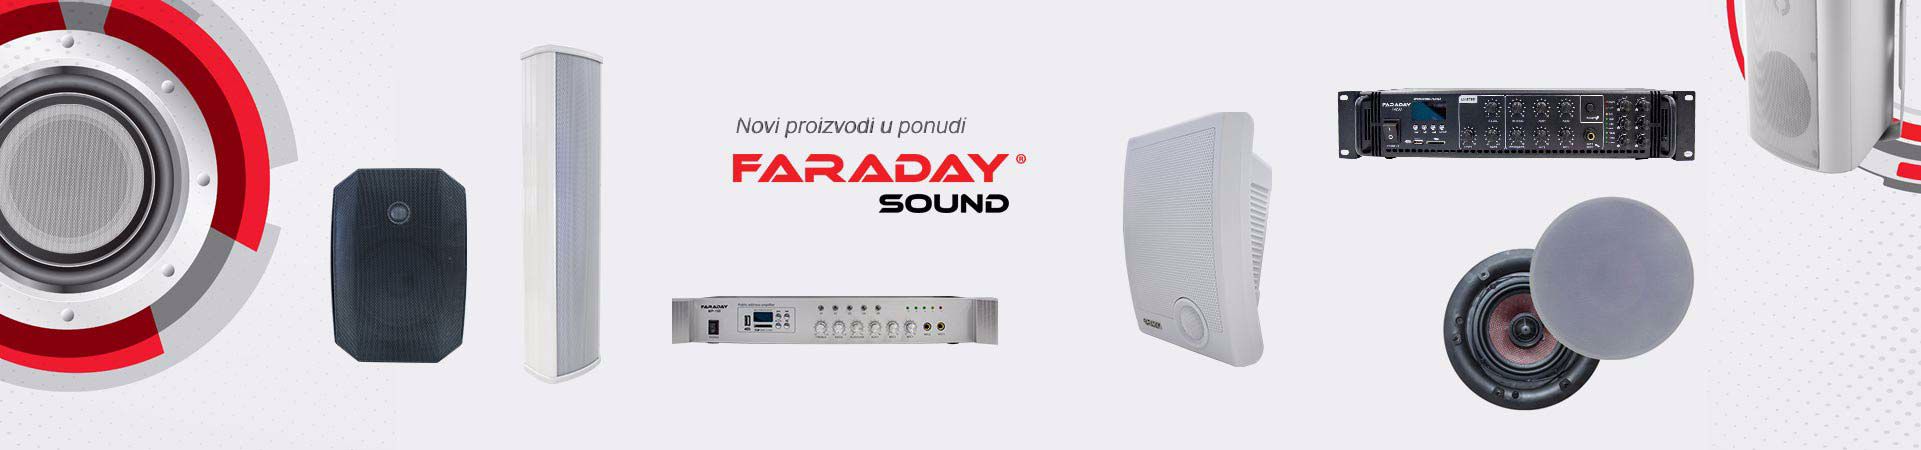 Faraday Sound - PA sistemi ozvučenja